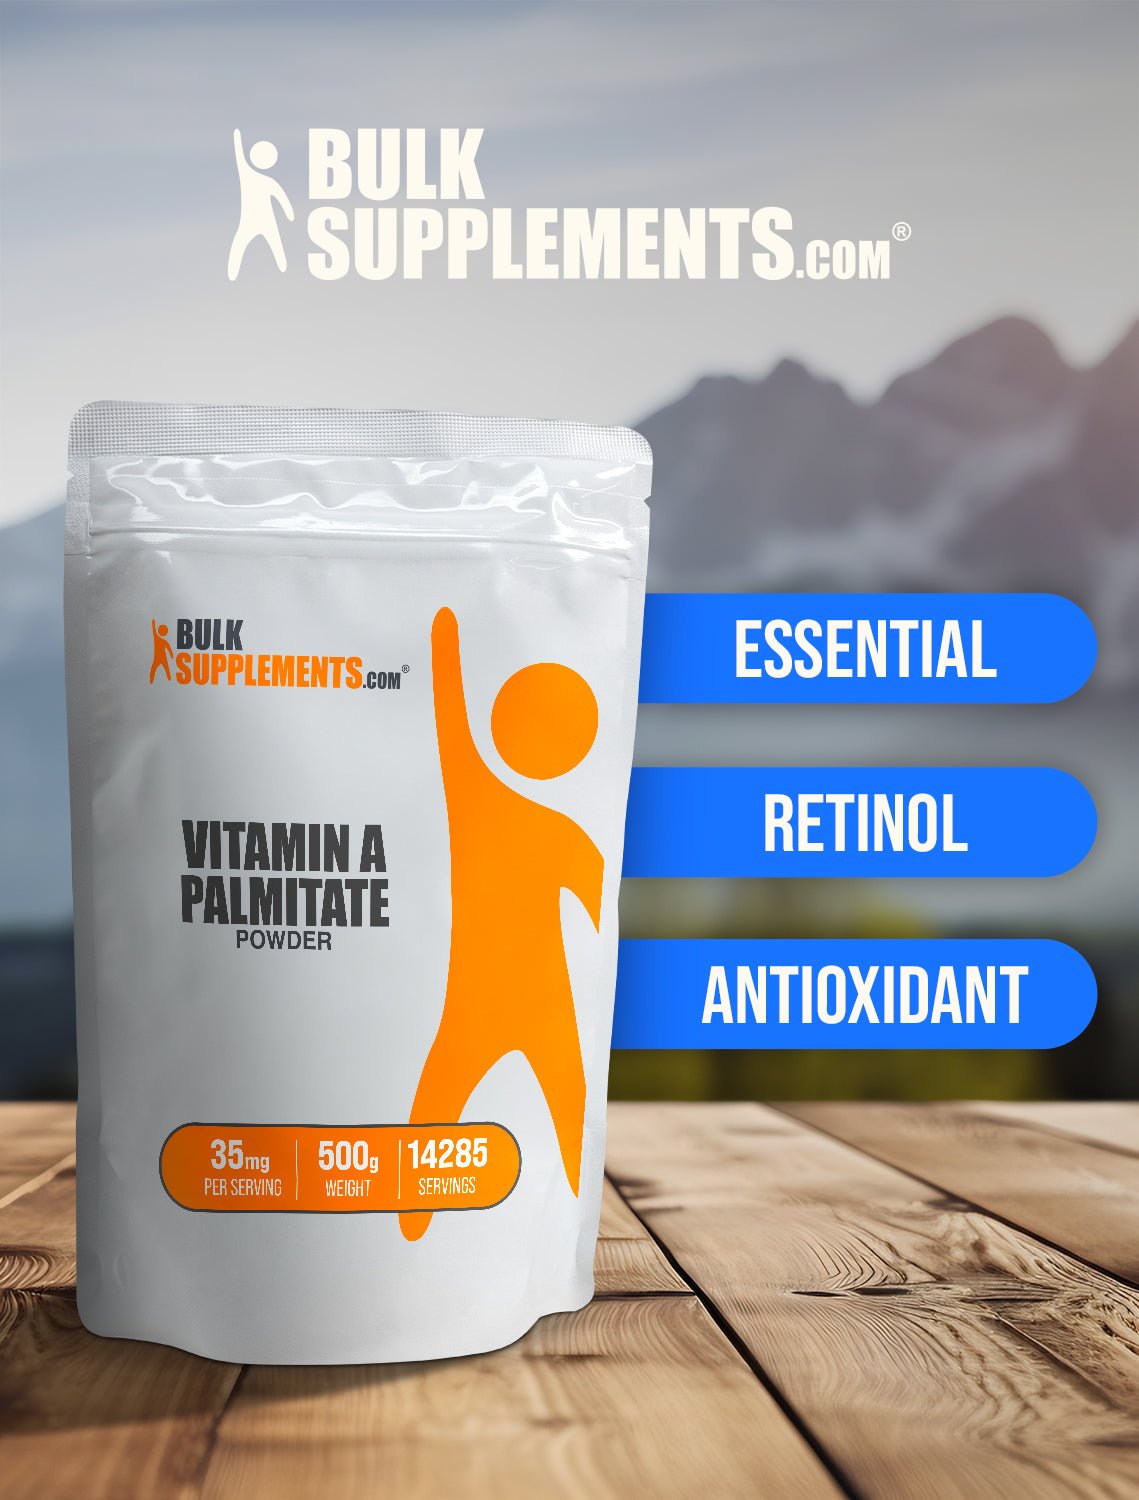 Vitamin A Palmitate powder keyword image 500g